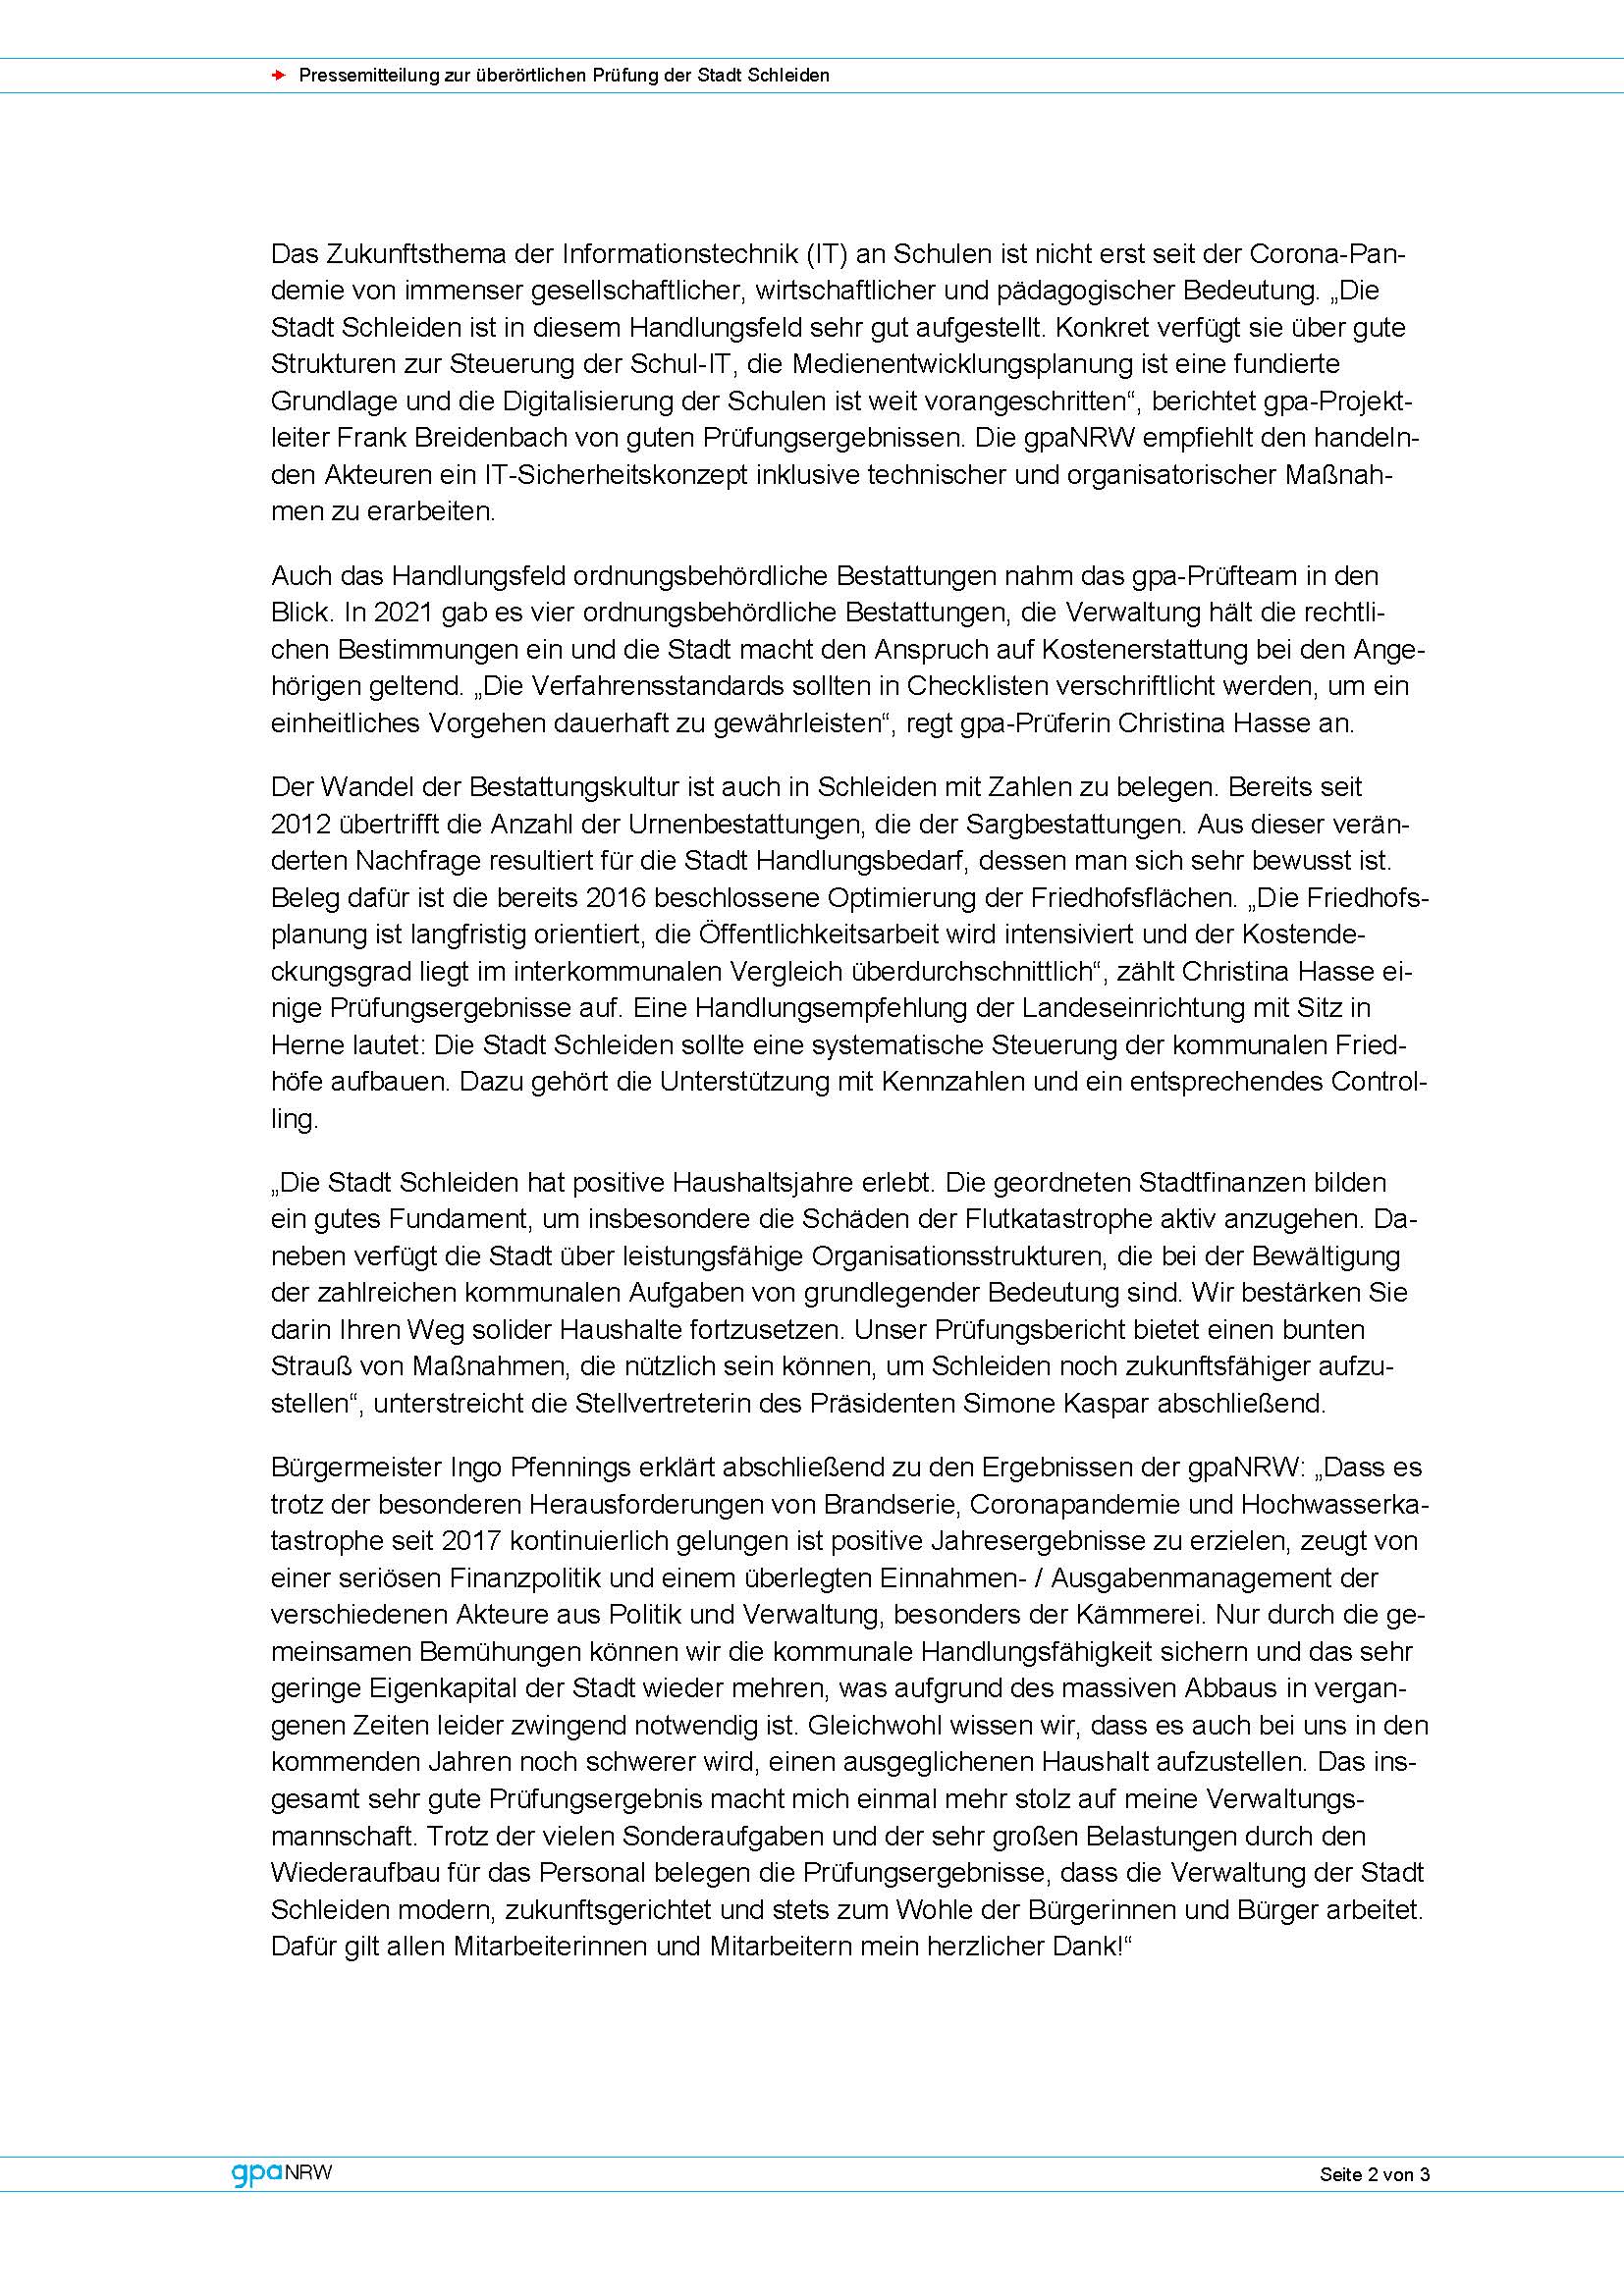 Pressemitteilung zur überörtlichen Prüfung der Stadt Schleiden durch die gpaNRW